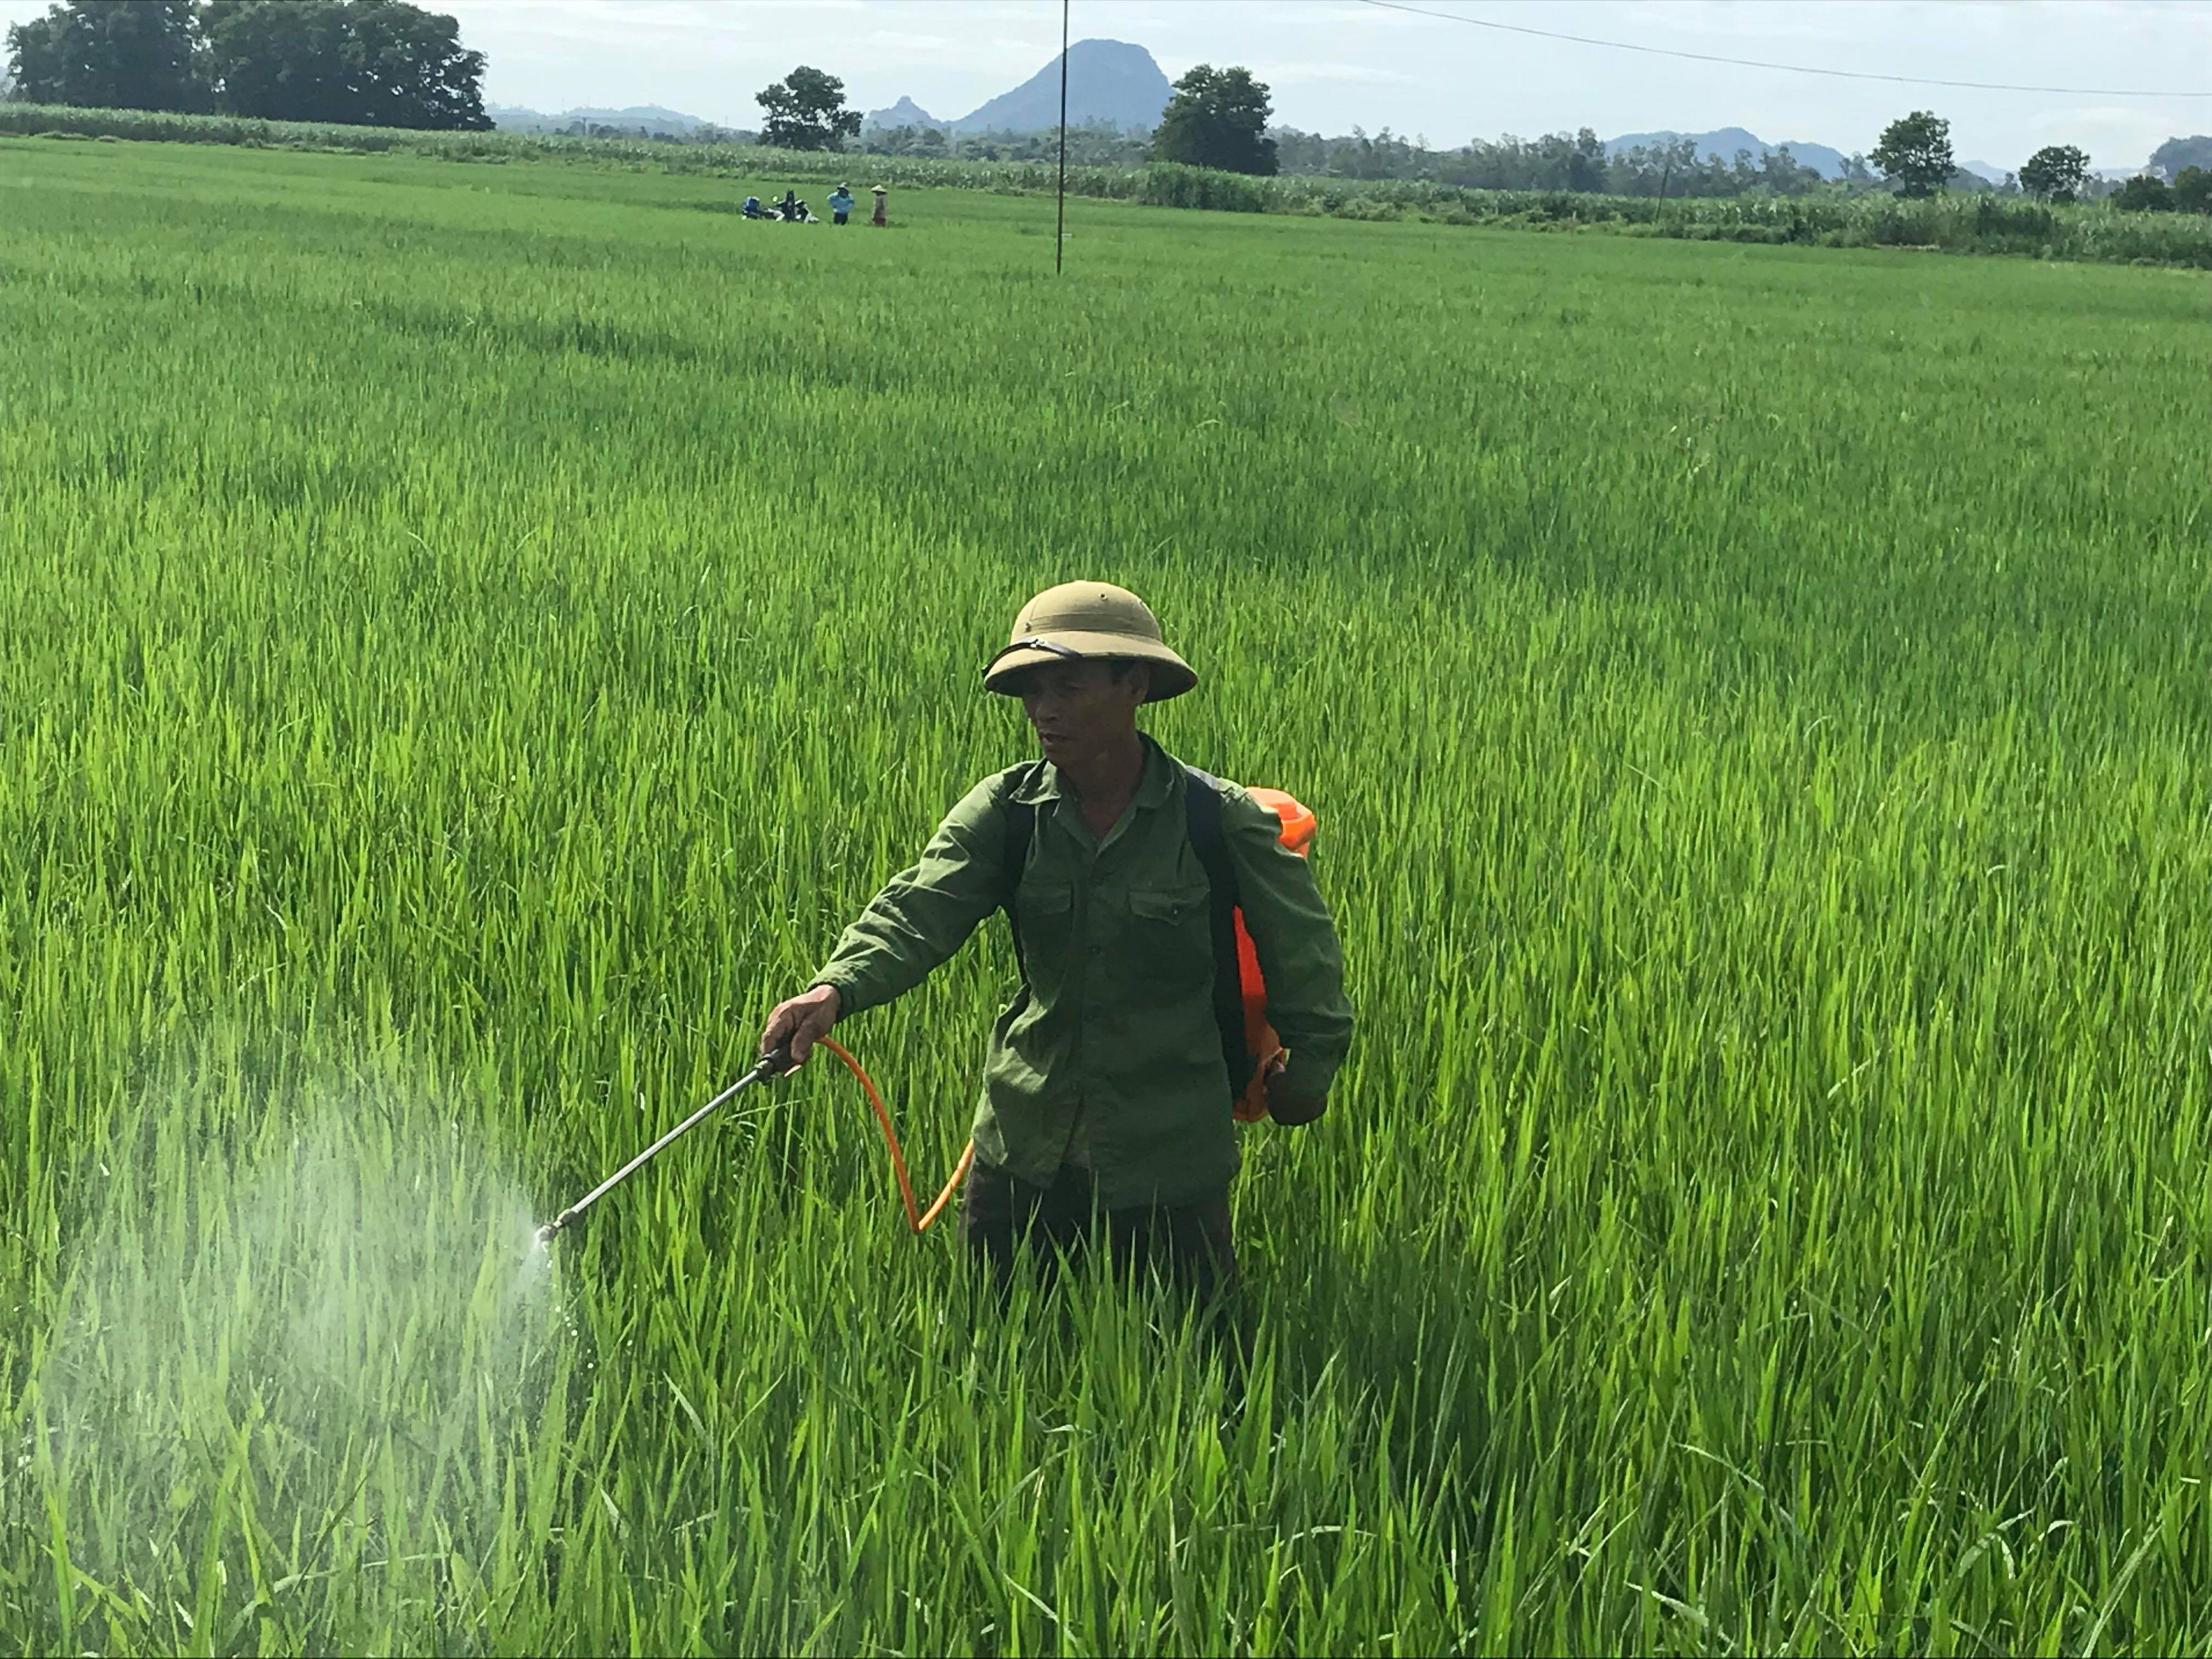 Tranh thủ thời tiết nắng lên, bà con nông dân ra đồng phun thuốc phòng trừ sâu bệnh trên lúa mùa. Ảnh: Minh Thái